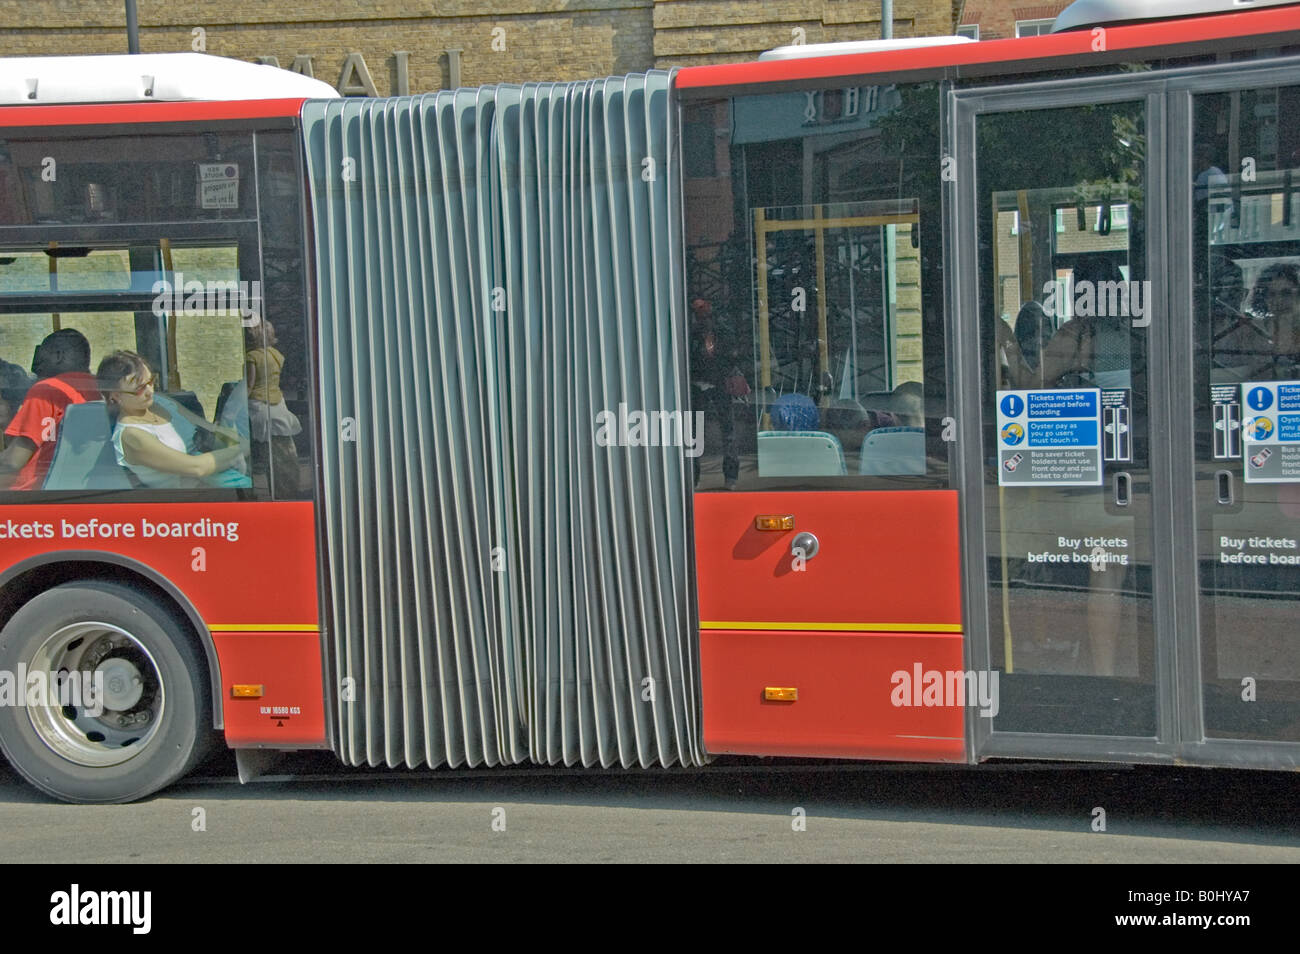 Bendy peu d'un bus bendy Islington Londres Angleterre Royaume-uni Banque D'Images